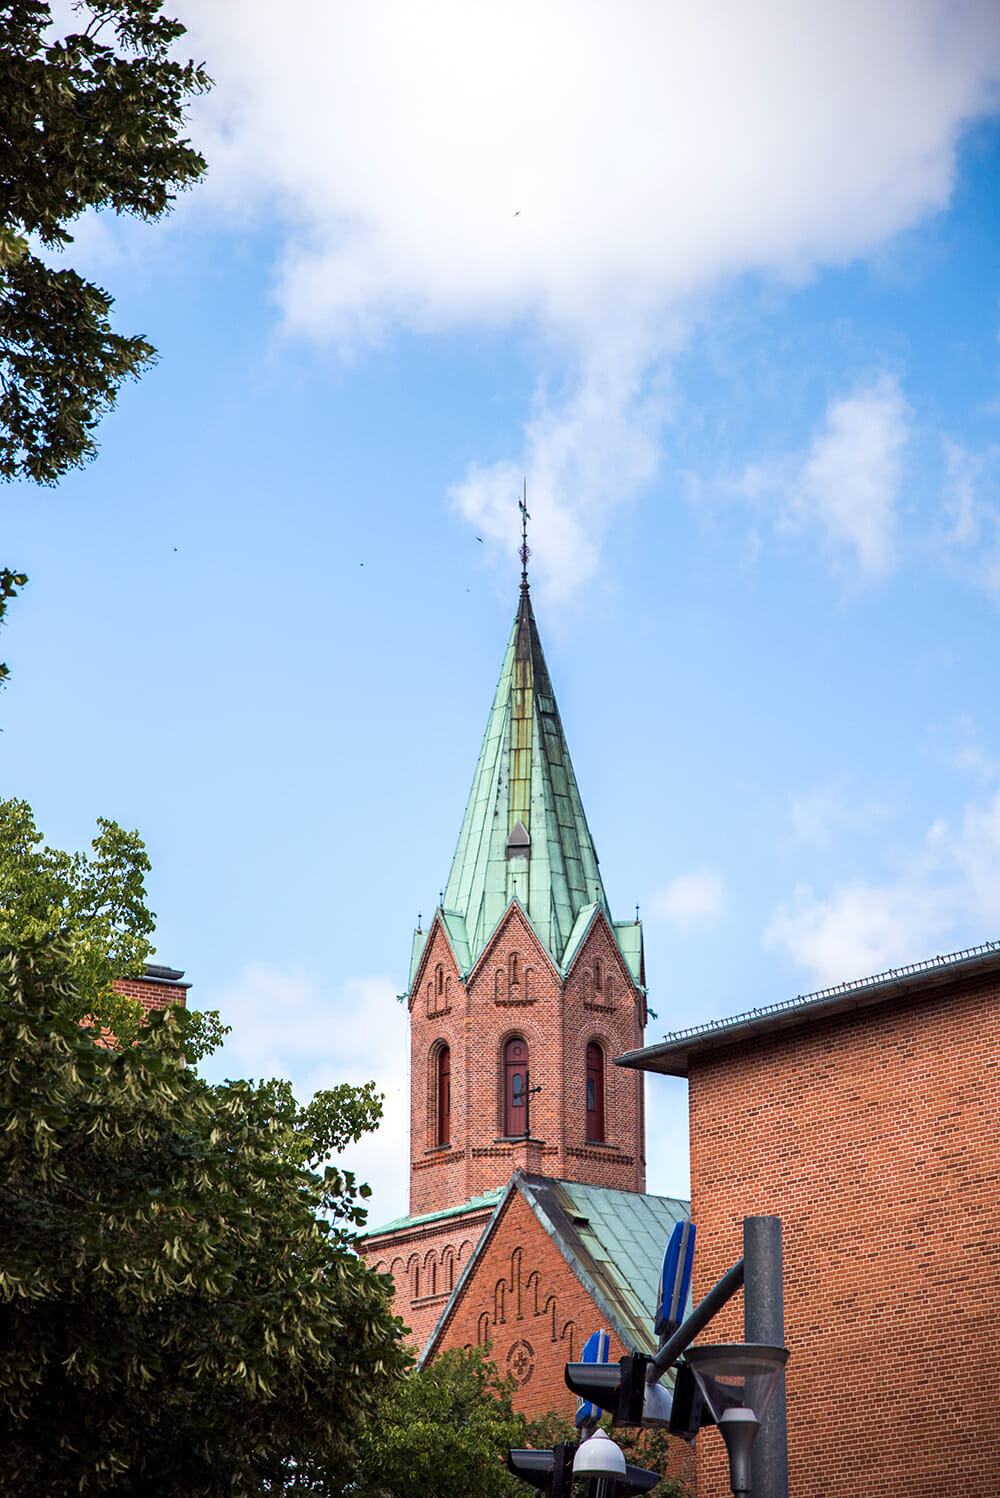 Church in Silkeborg, Denmark